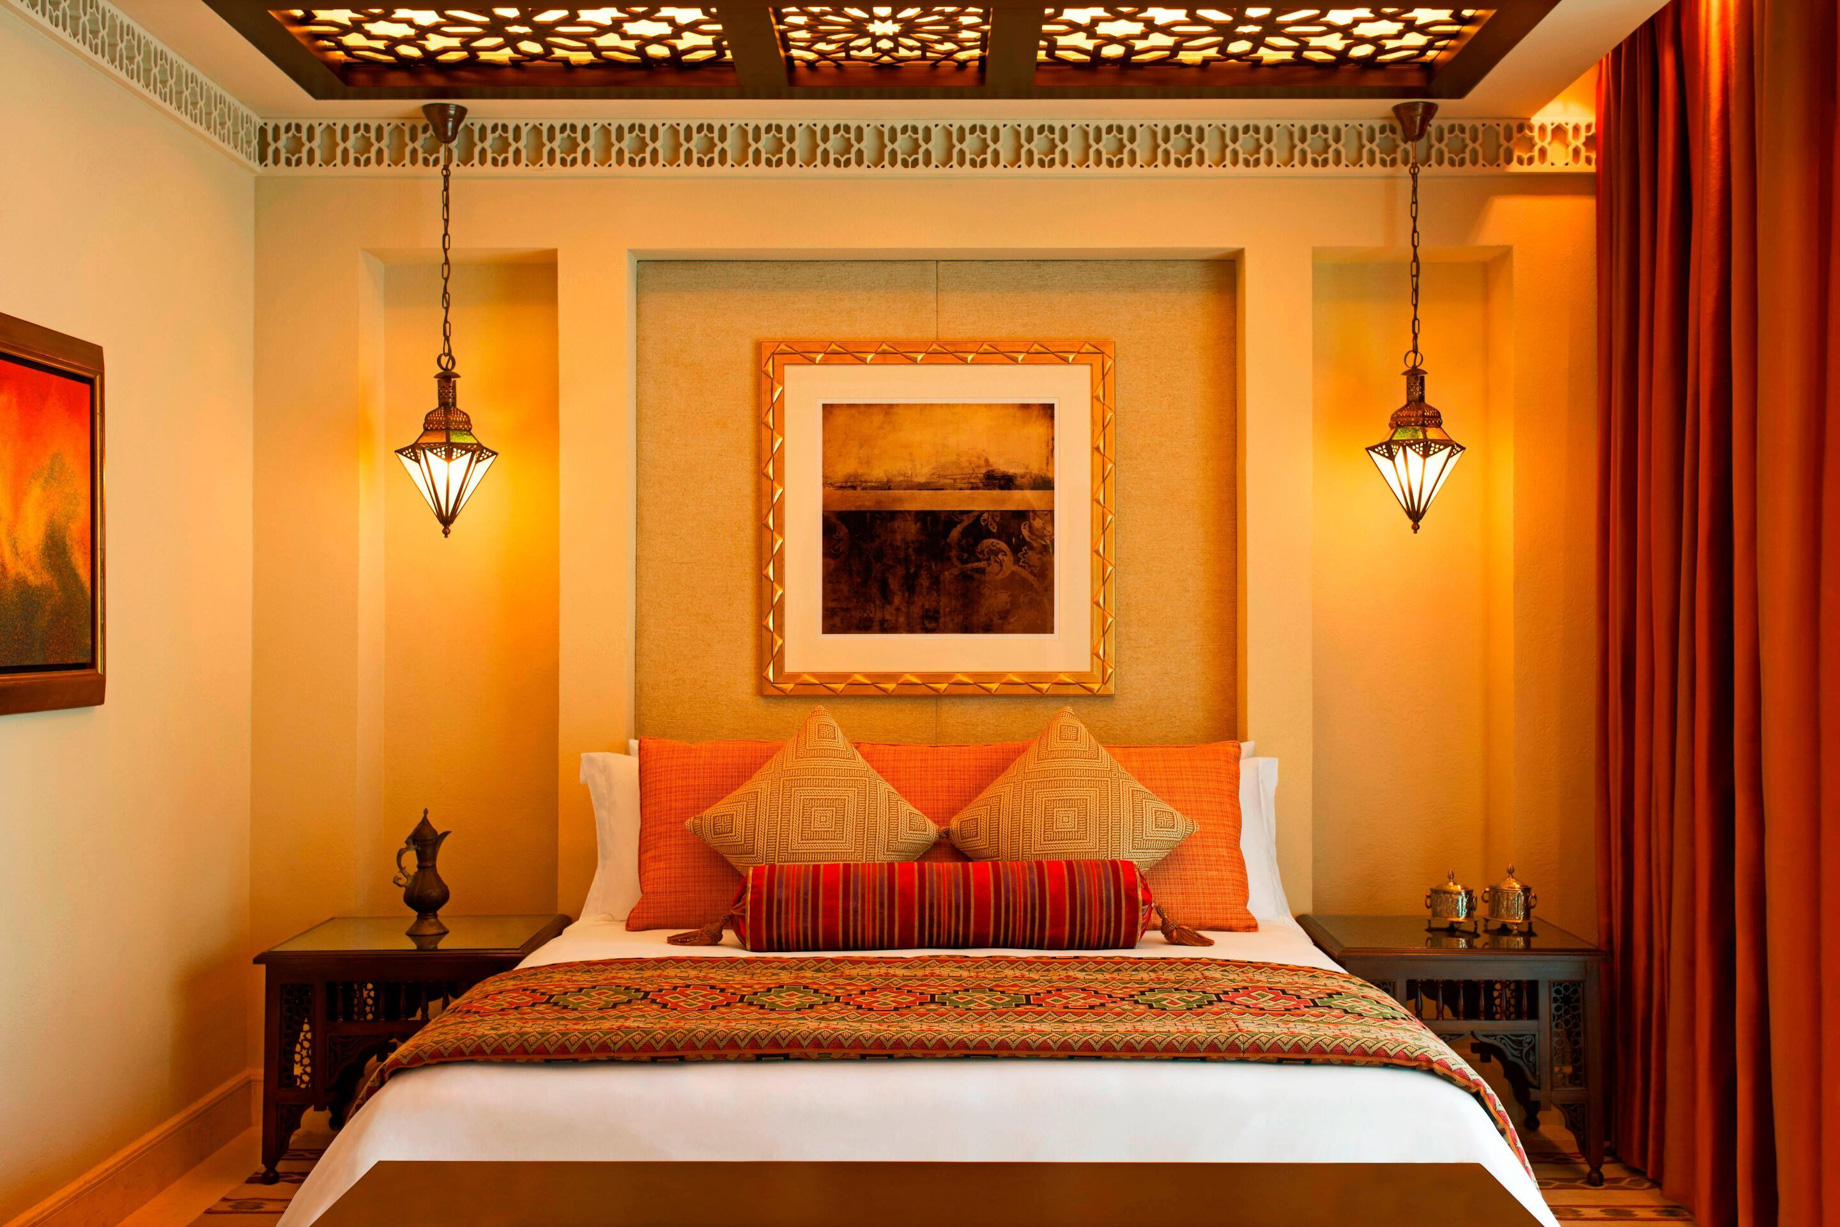 The St. Regis Saadiyat Island Resort - Abu Dhabi, UAE - Moroccan Spa Suite Bedroom